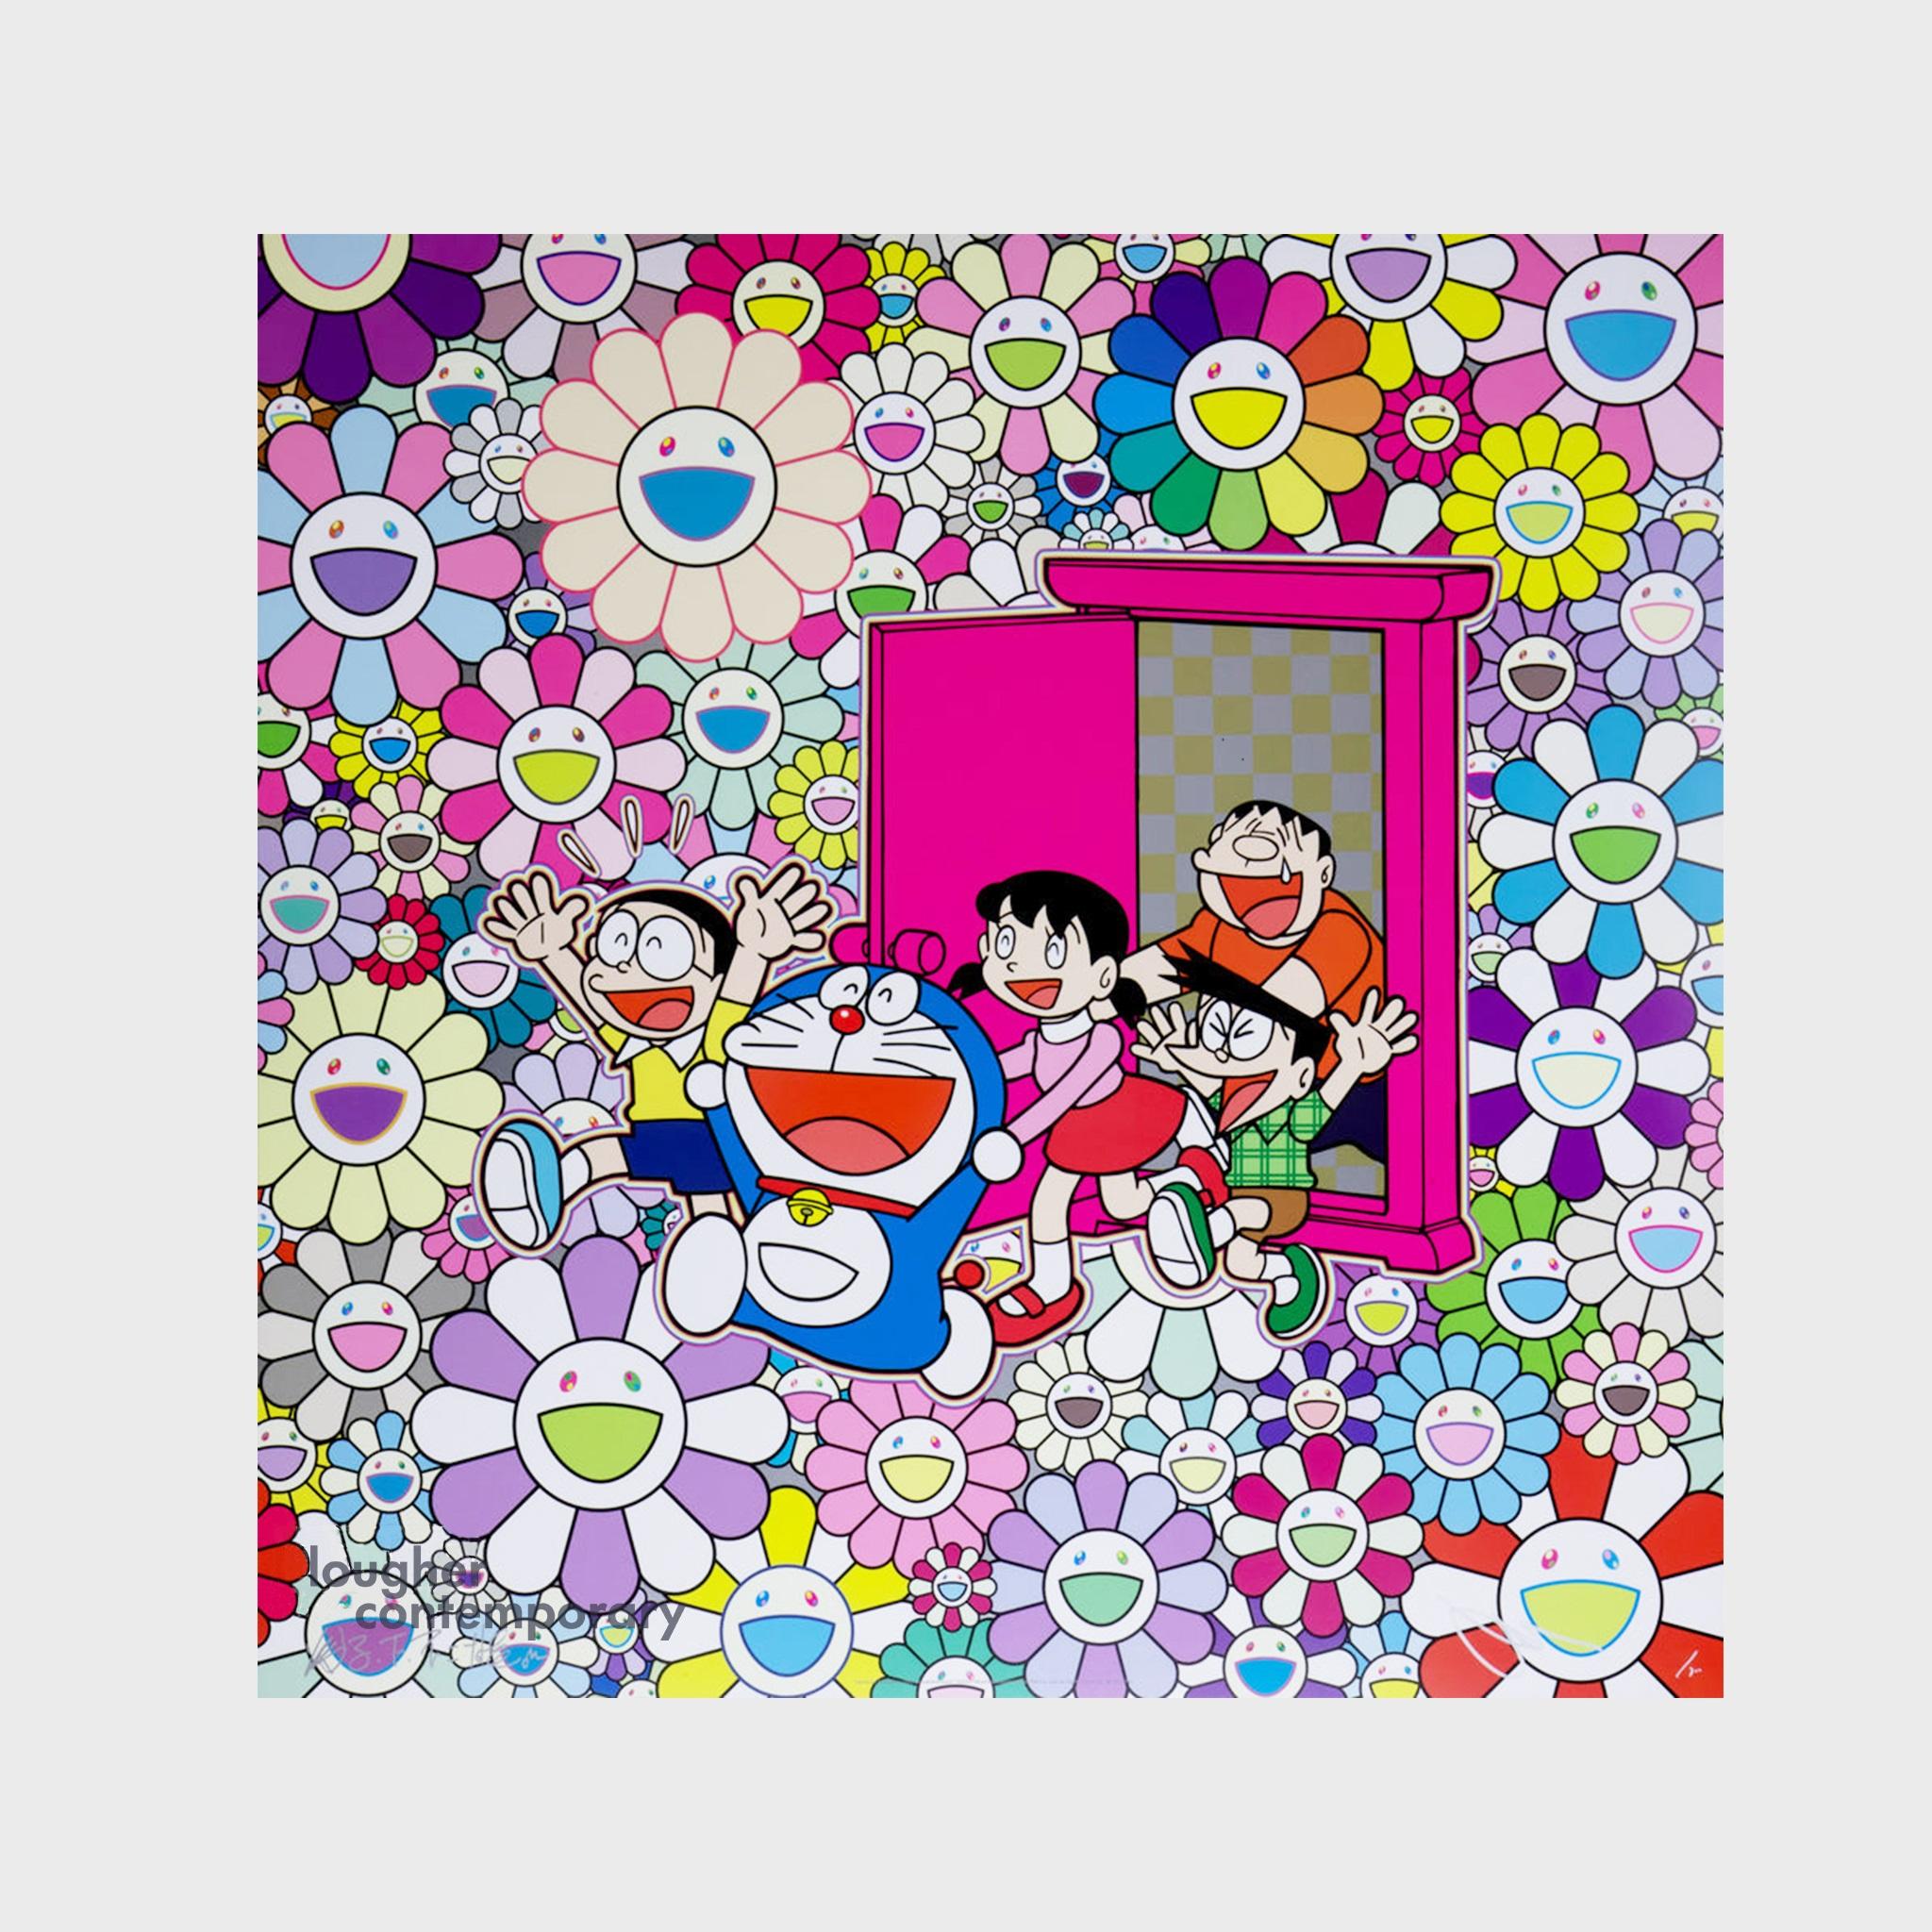 Saved by Dokodemo Door (Anywhere Door) - Print by Takashi Murakami